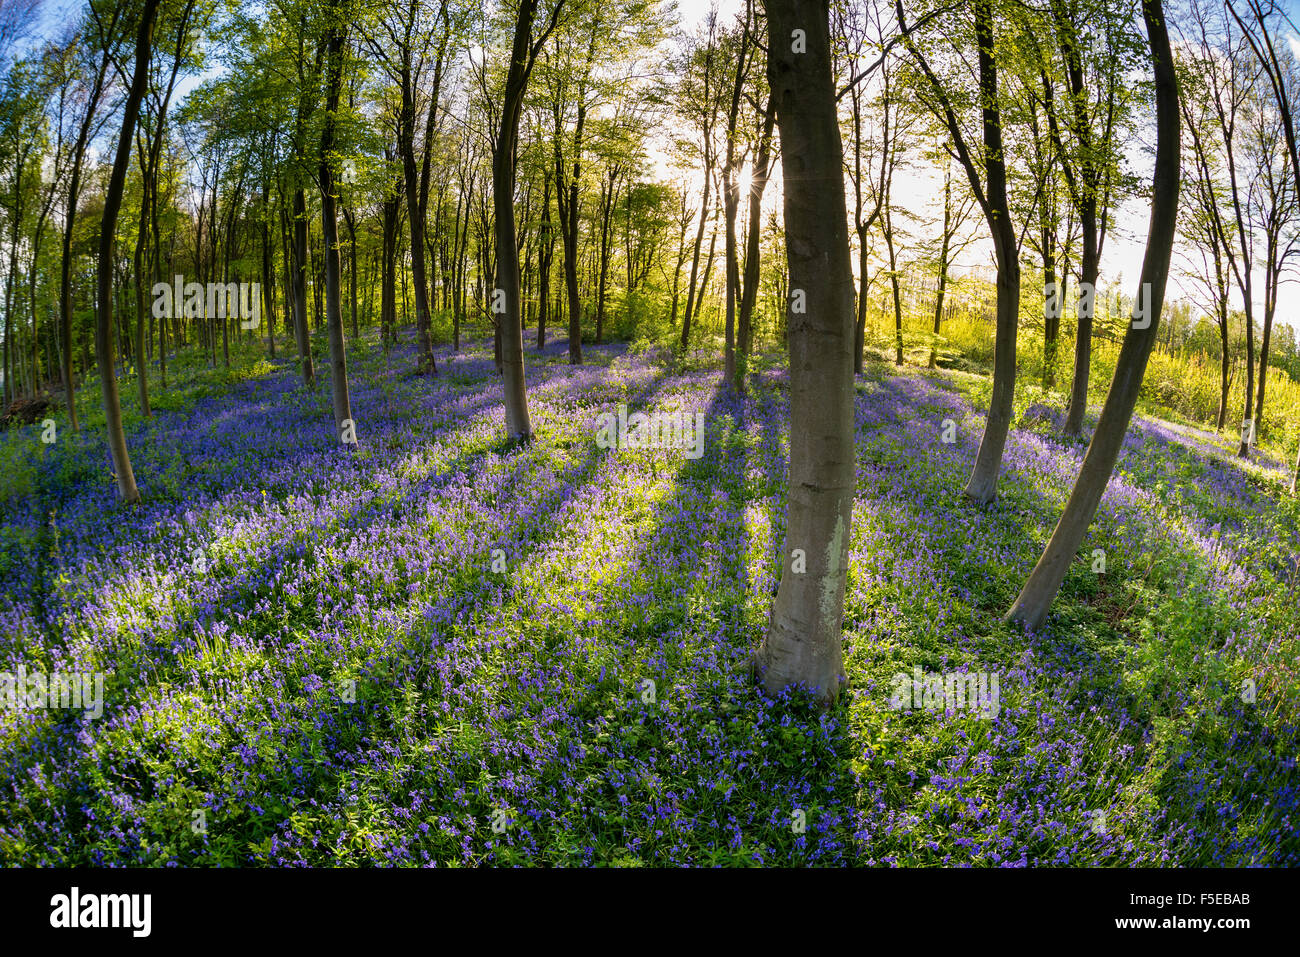 Bluebell común (Hyacinthoides non-scripta) creciendo en común hábitat de bosques de hayas, Kent, Inglaterra, Reino Unido, Europa Foto de stock